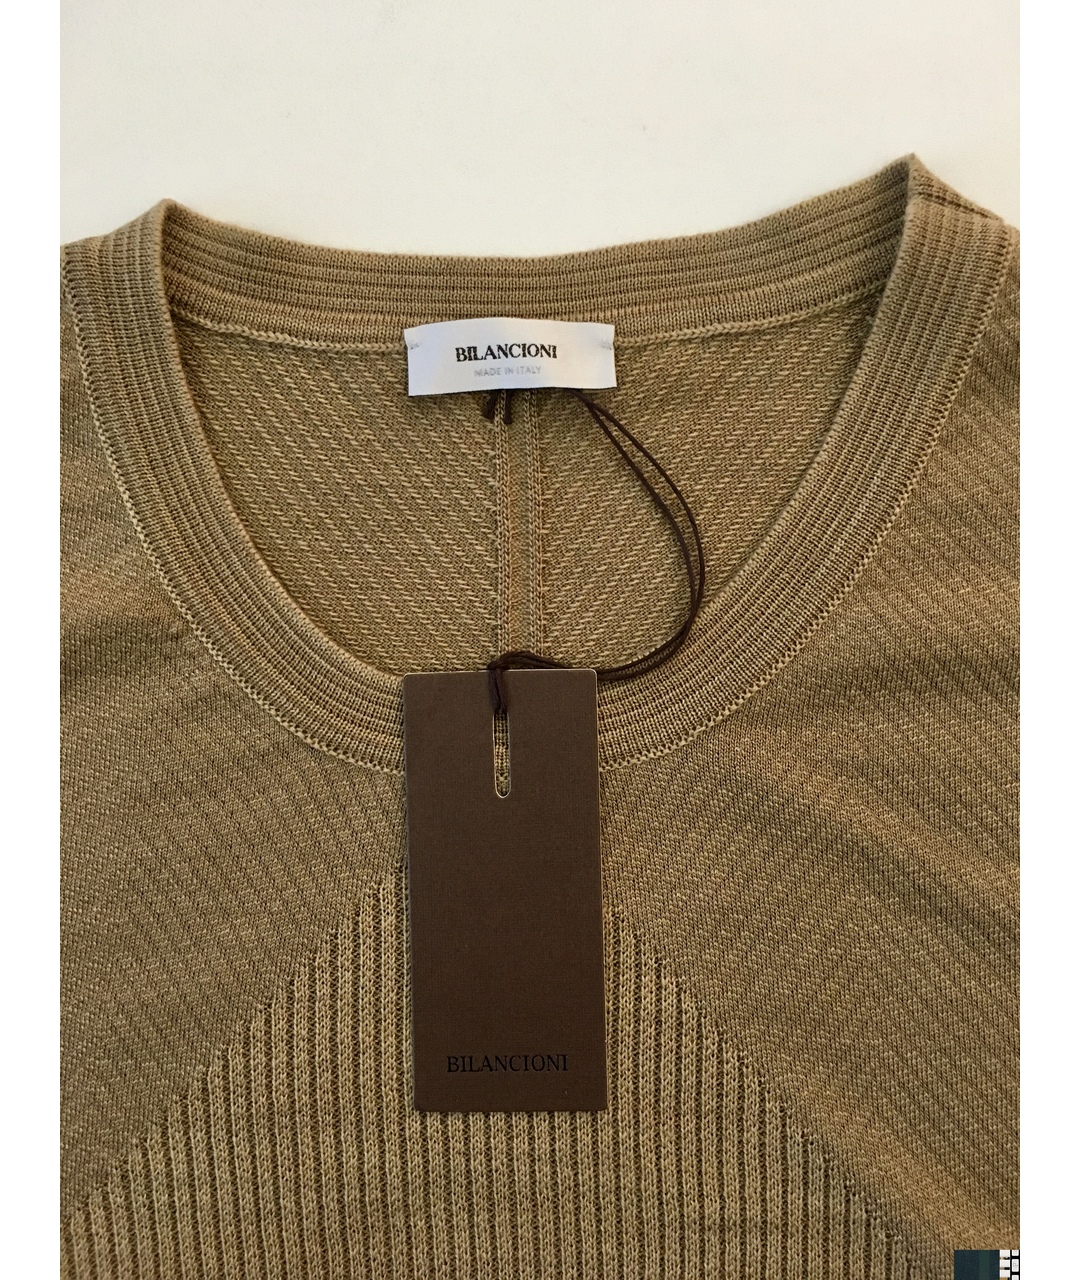 BILANCIONI Коричневый шерстяной джемпер / свитер, фото 4